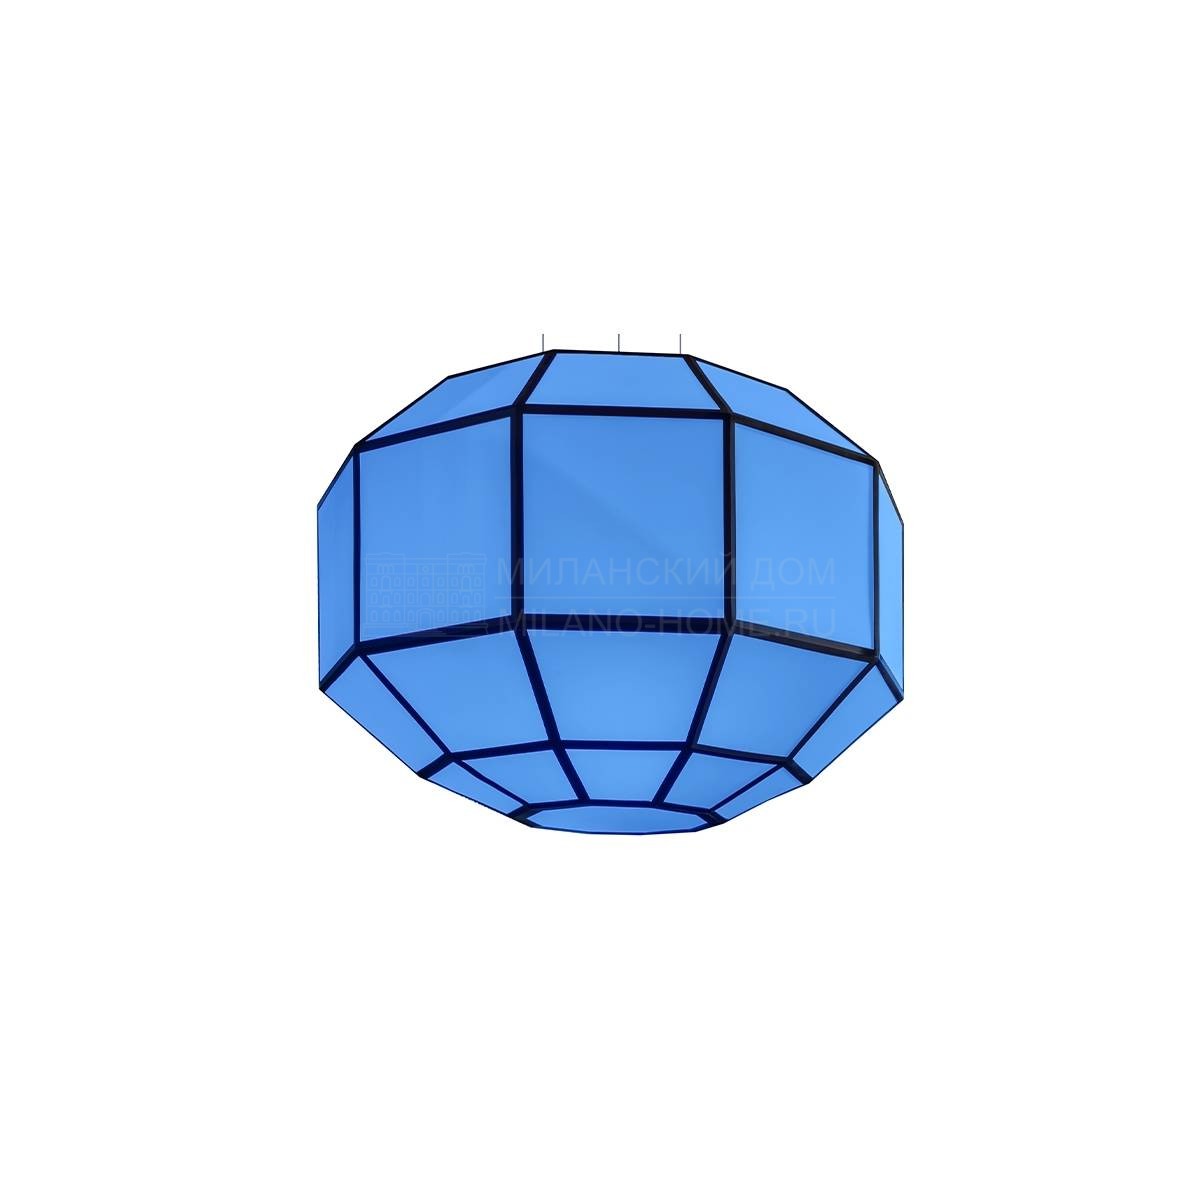 Люстра Azul lantern из Италии фабрики TURRI